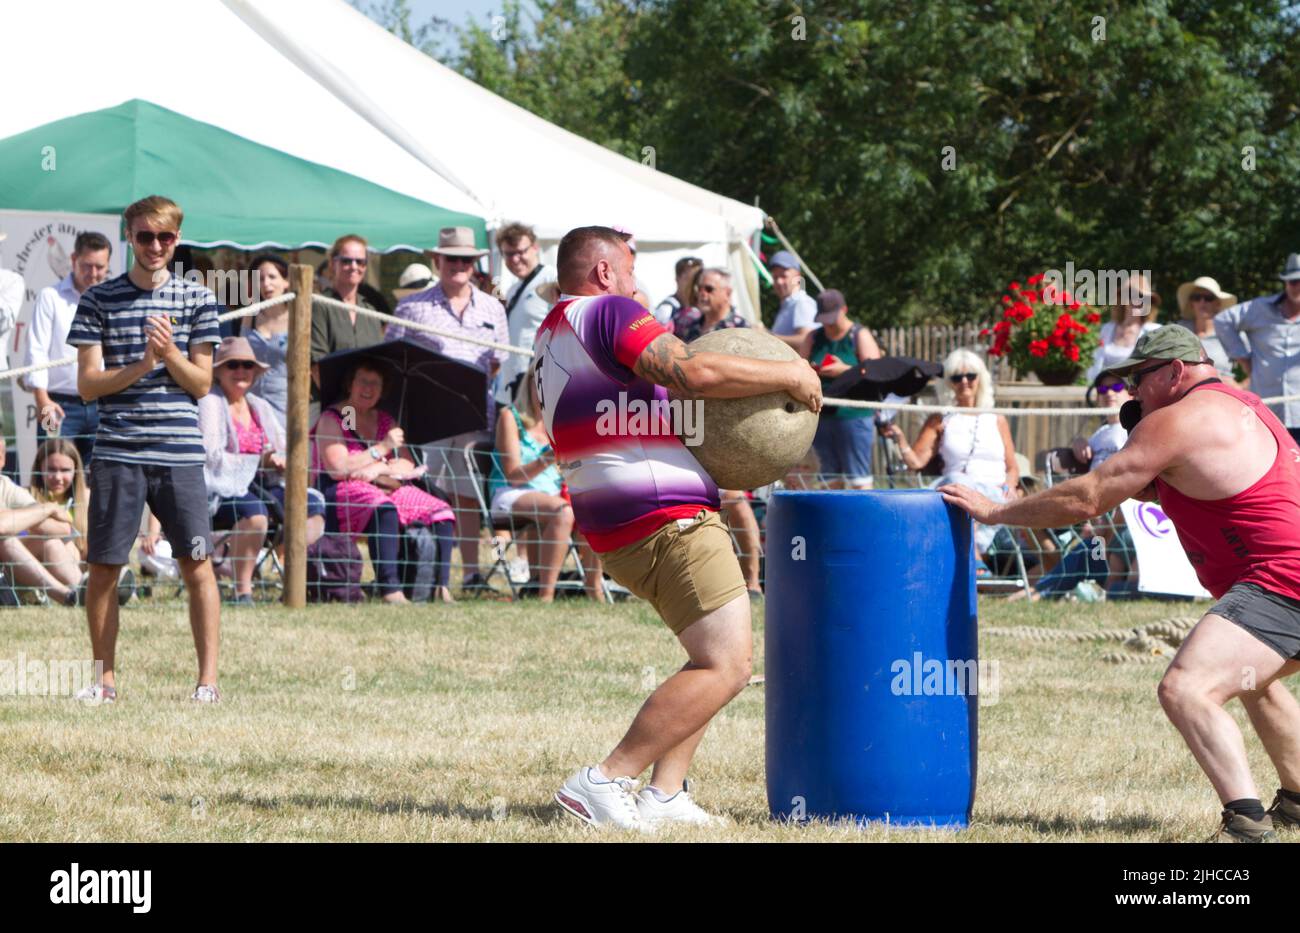 Un partecipante riesce a sollevare un peso pesante come parte della performance di Adrian Smith, noto come Mighty Smith, uno degli uomini più forti del Regno Unito. Foto Stock